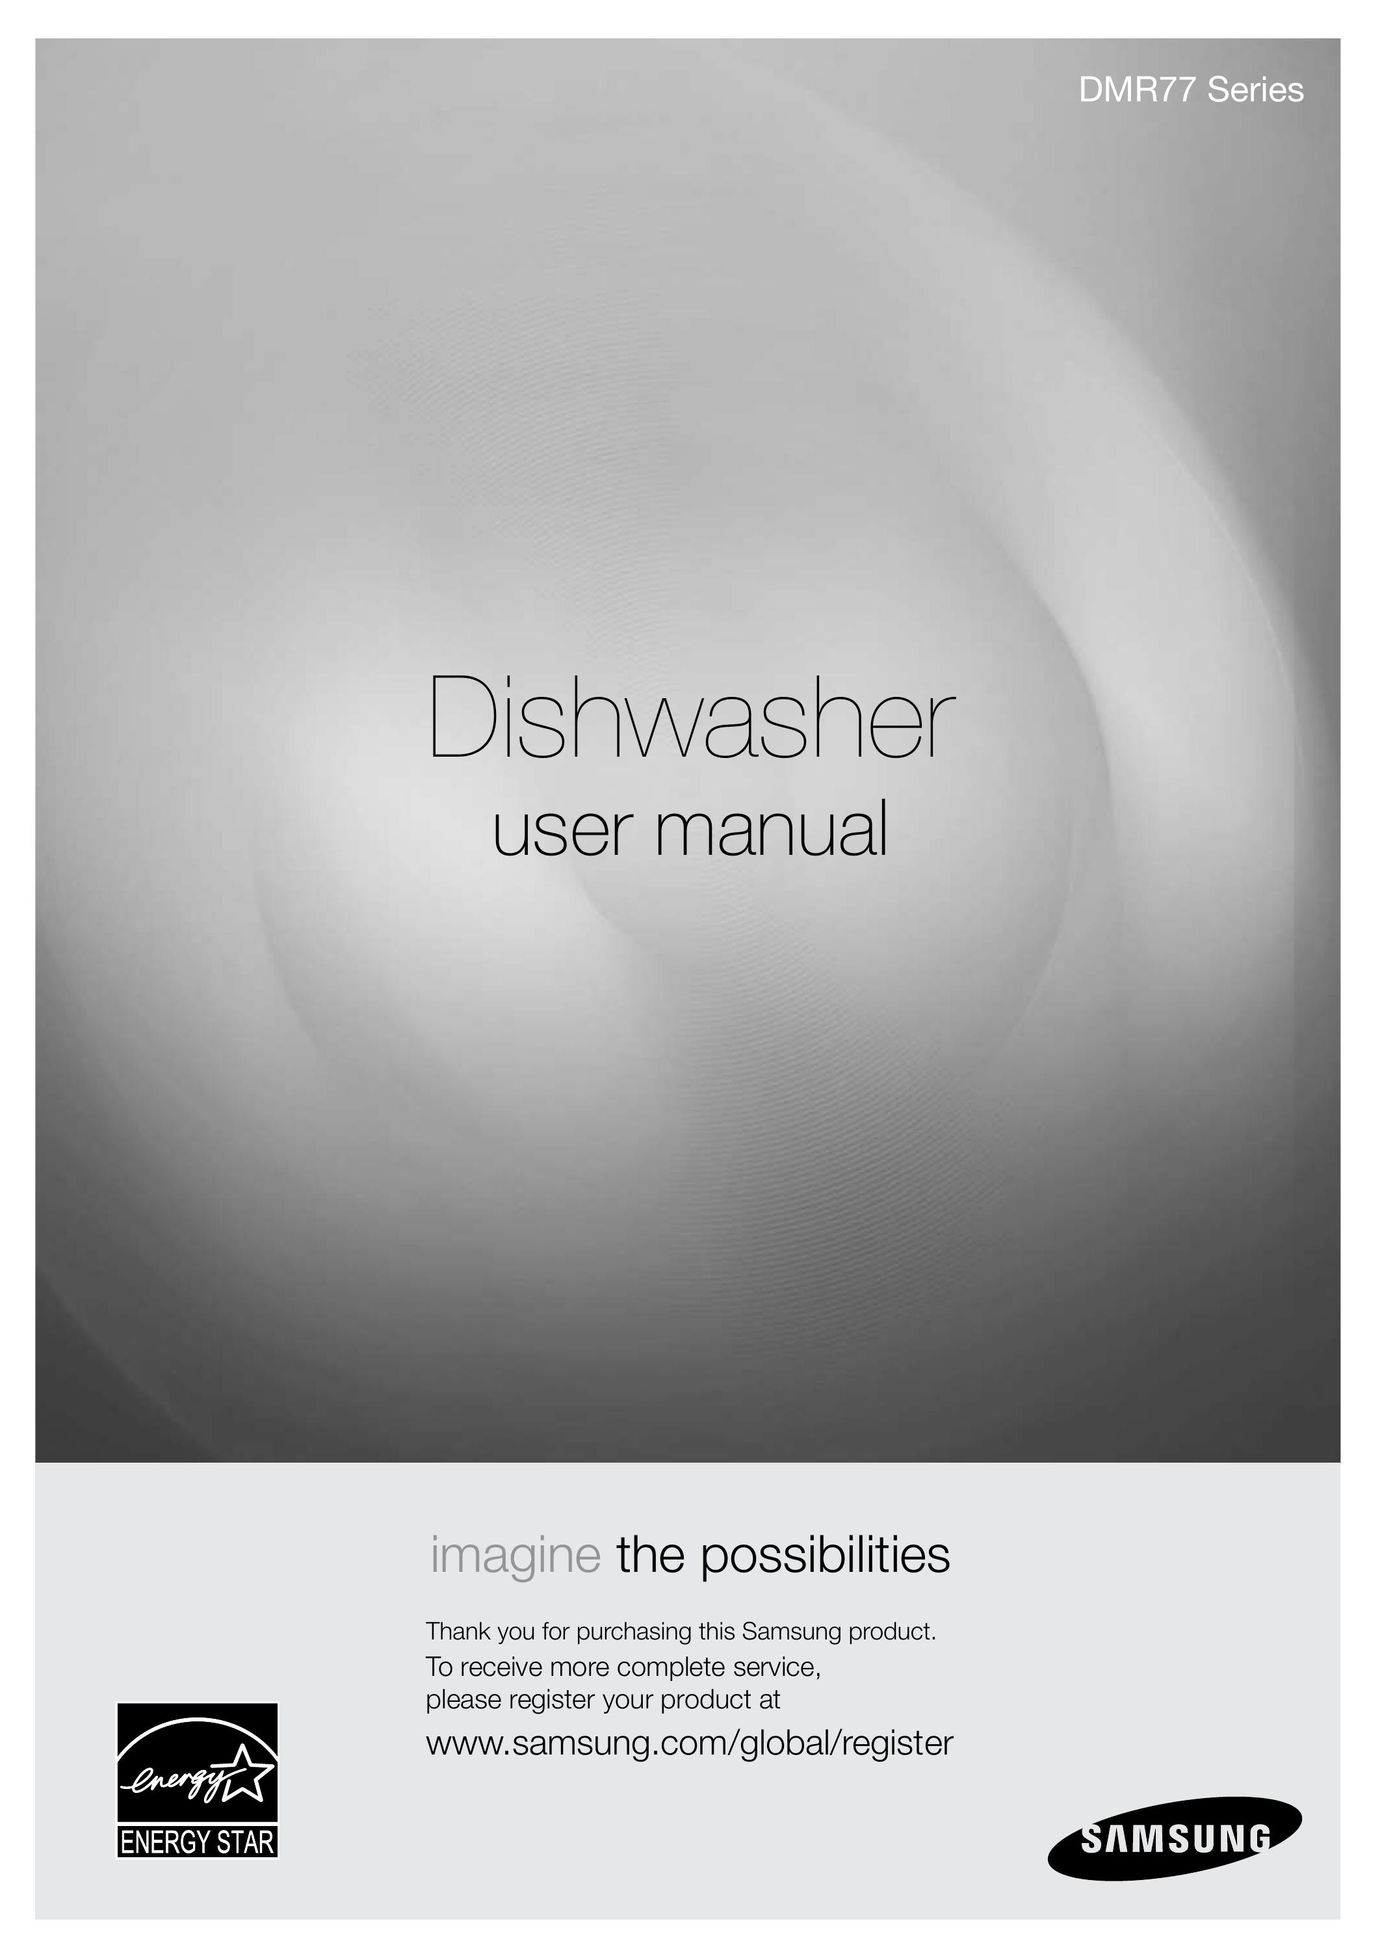 Samsung DMRLHS Dishwasher User Manual